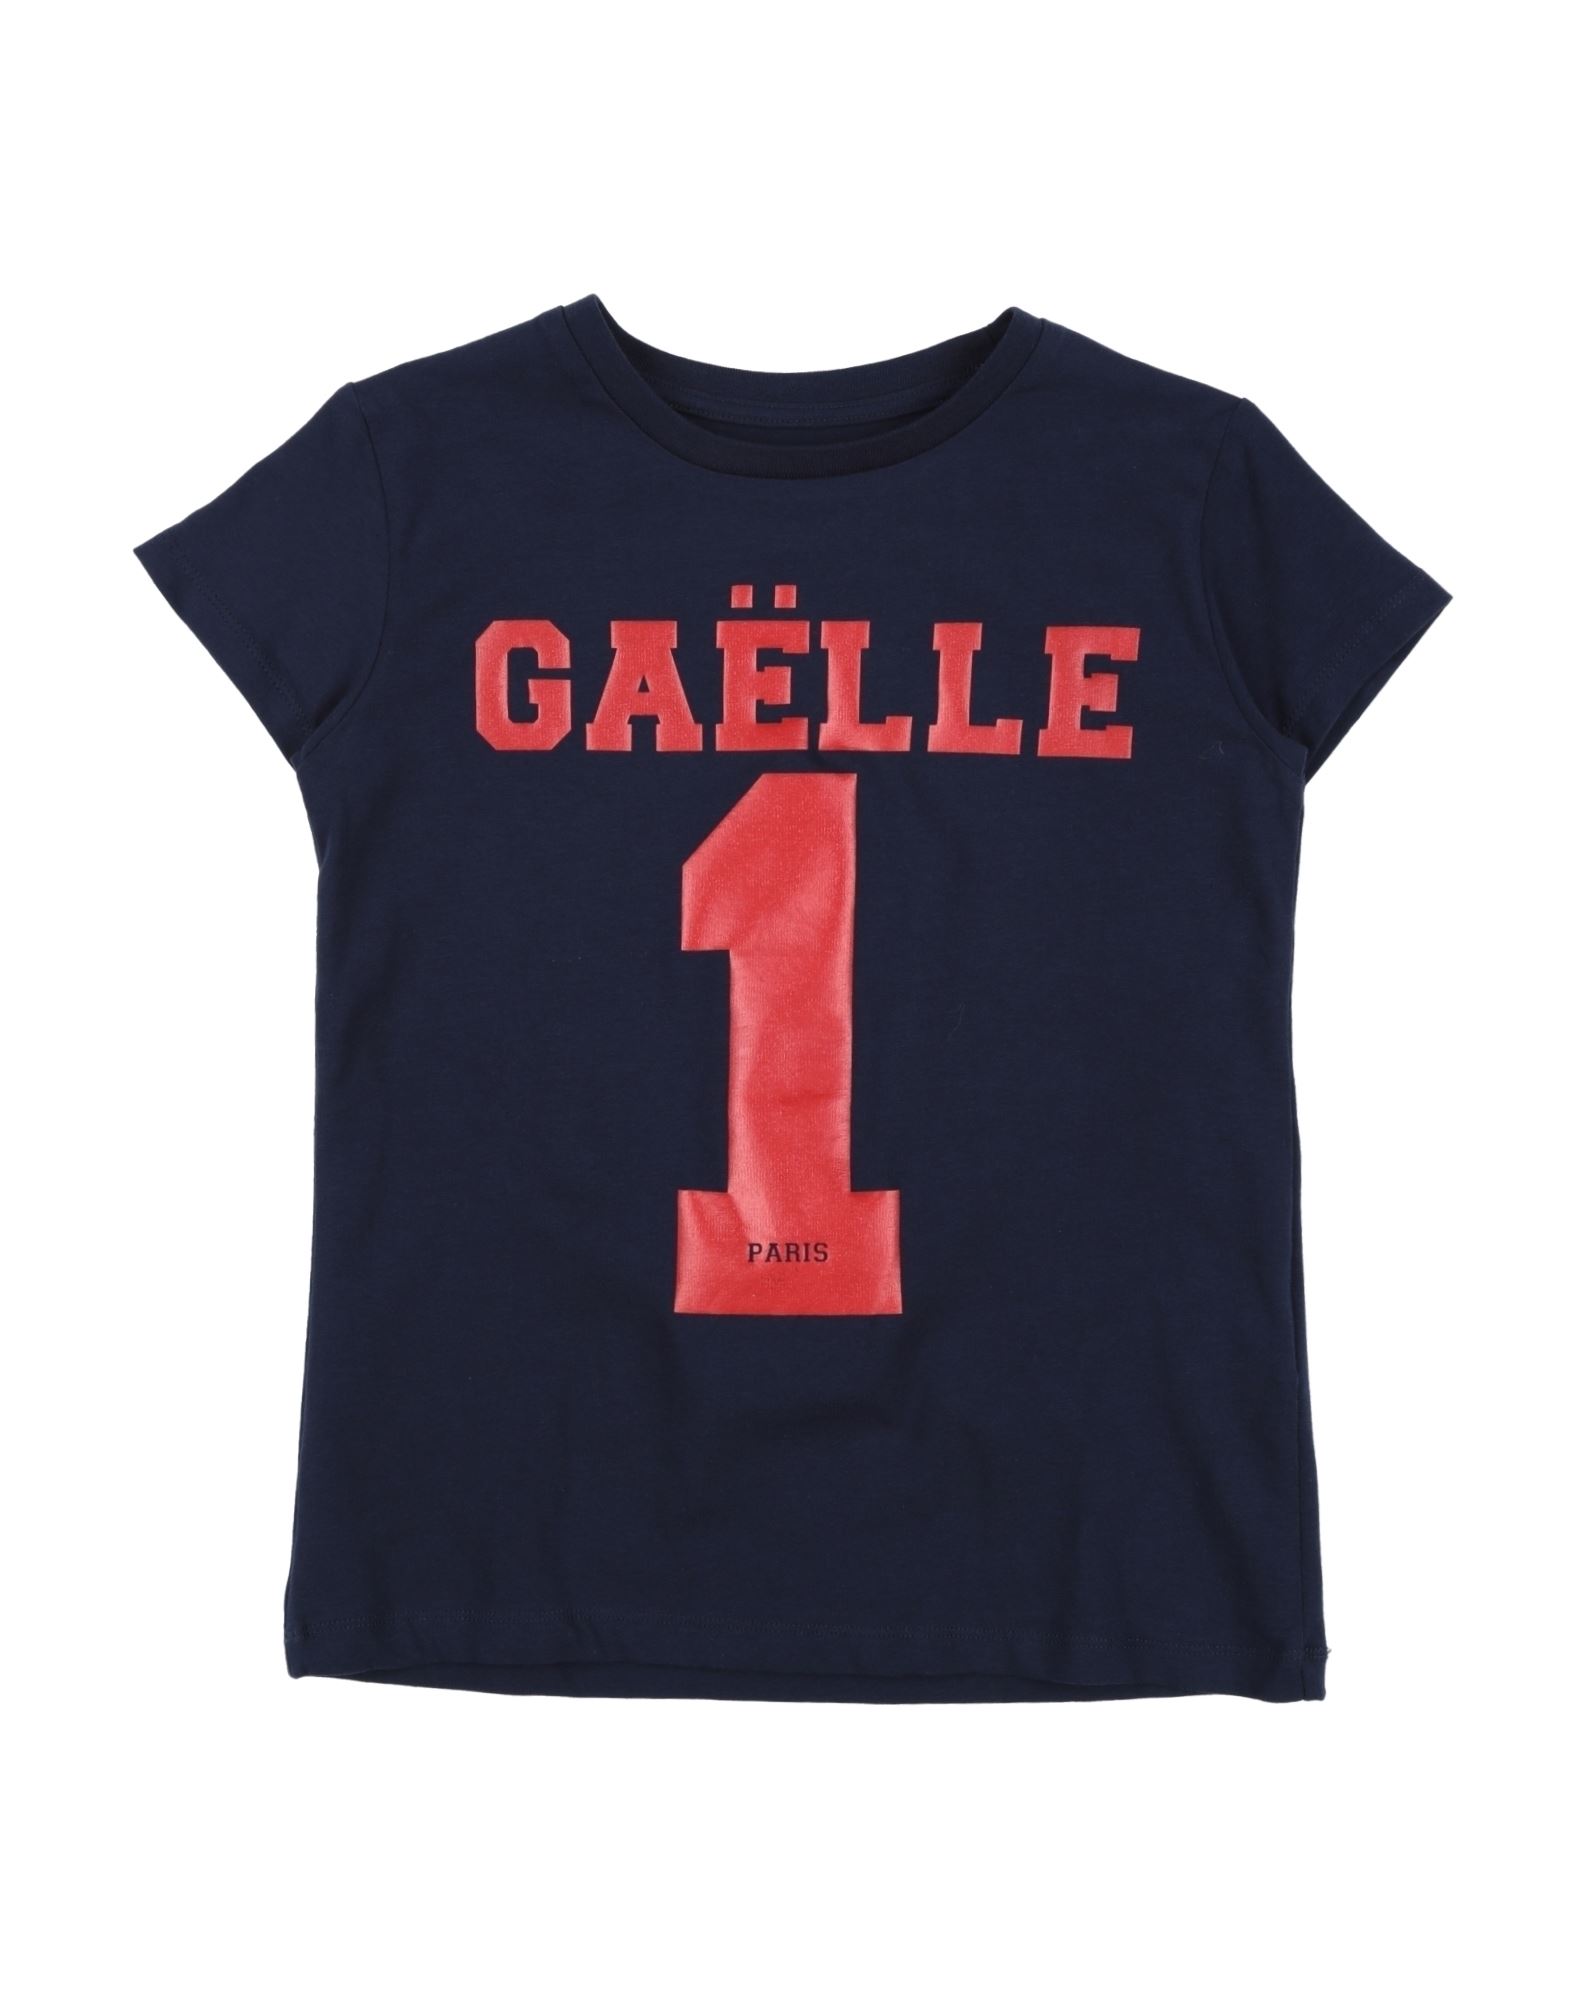 Gaelle Paris Kids' T-shirts In Dark Blue